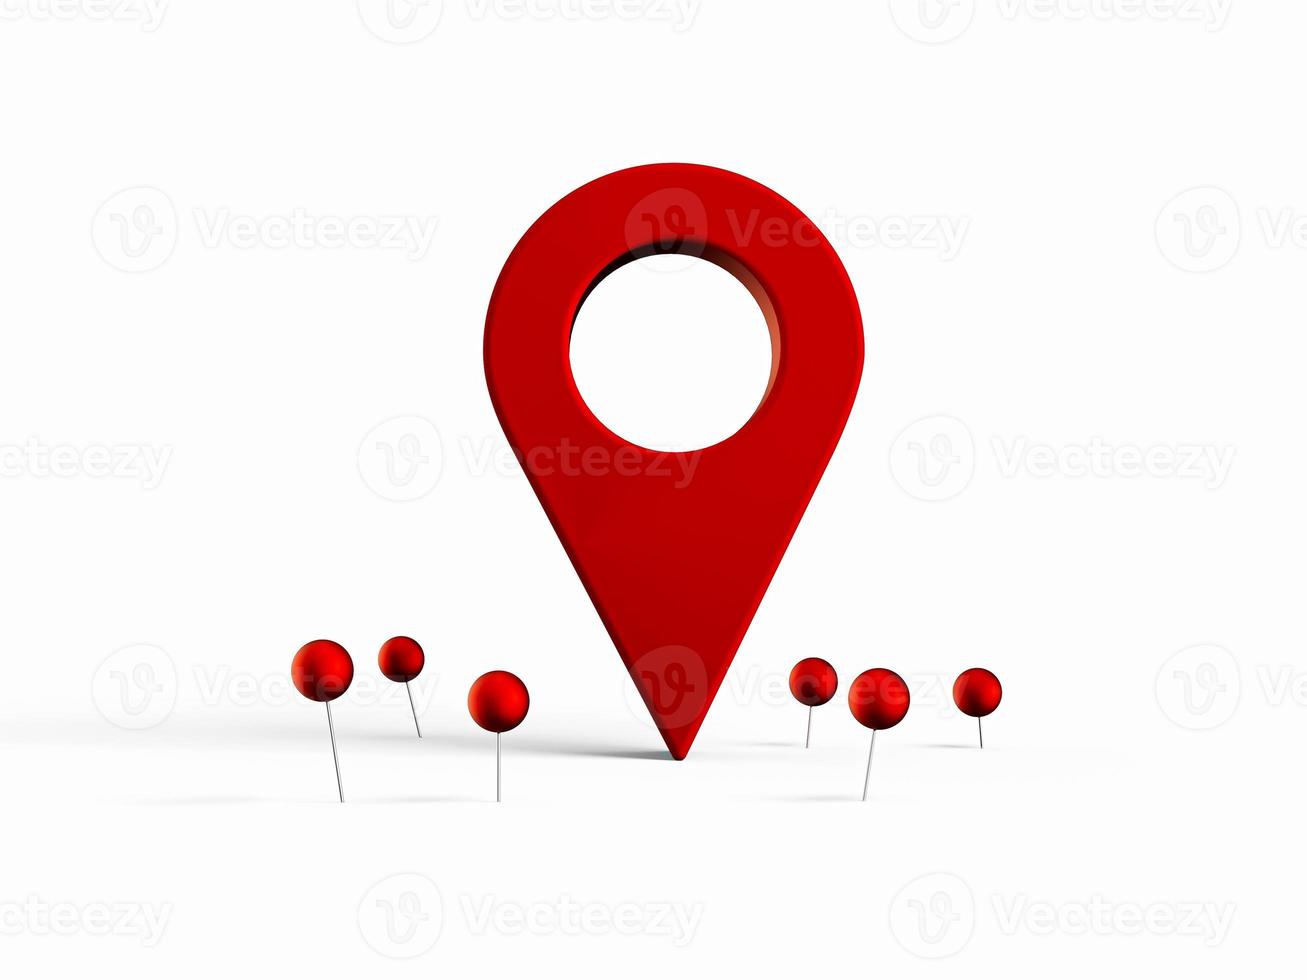 lokaliseringsmärke för karta och platsnål eller navigeringsikonskylt på vit bakgrund med sökkoncept. 3d illustration foto